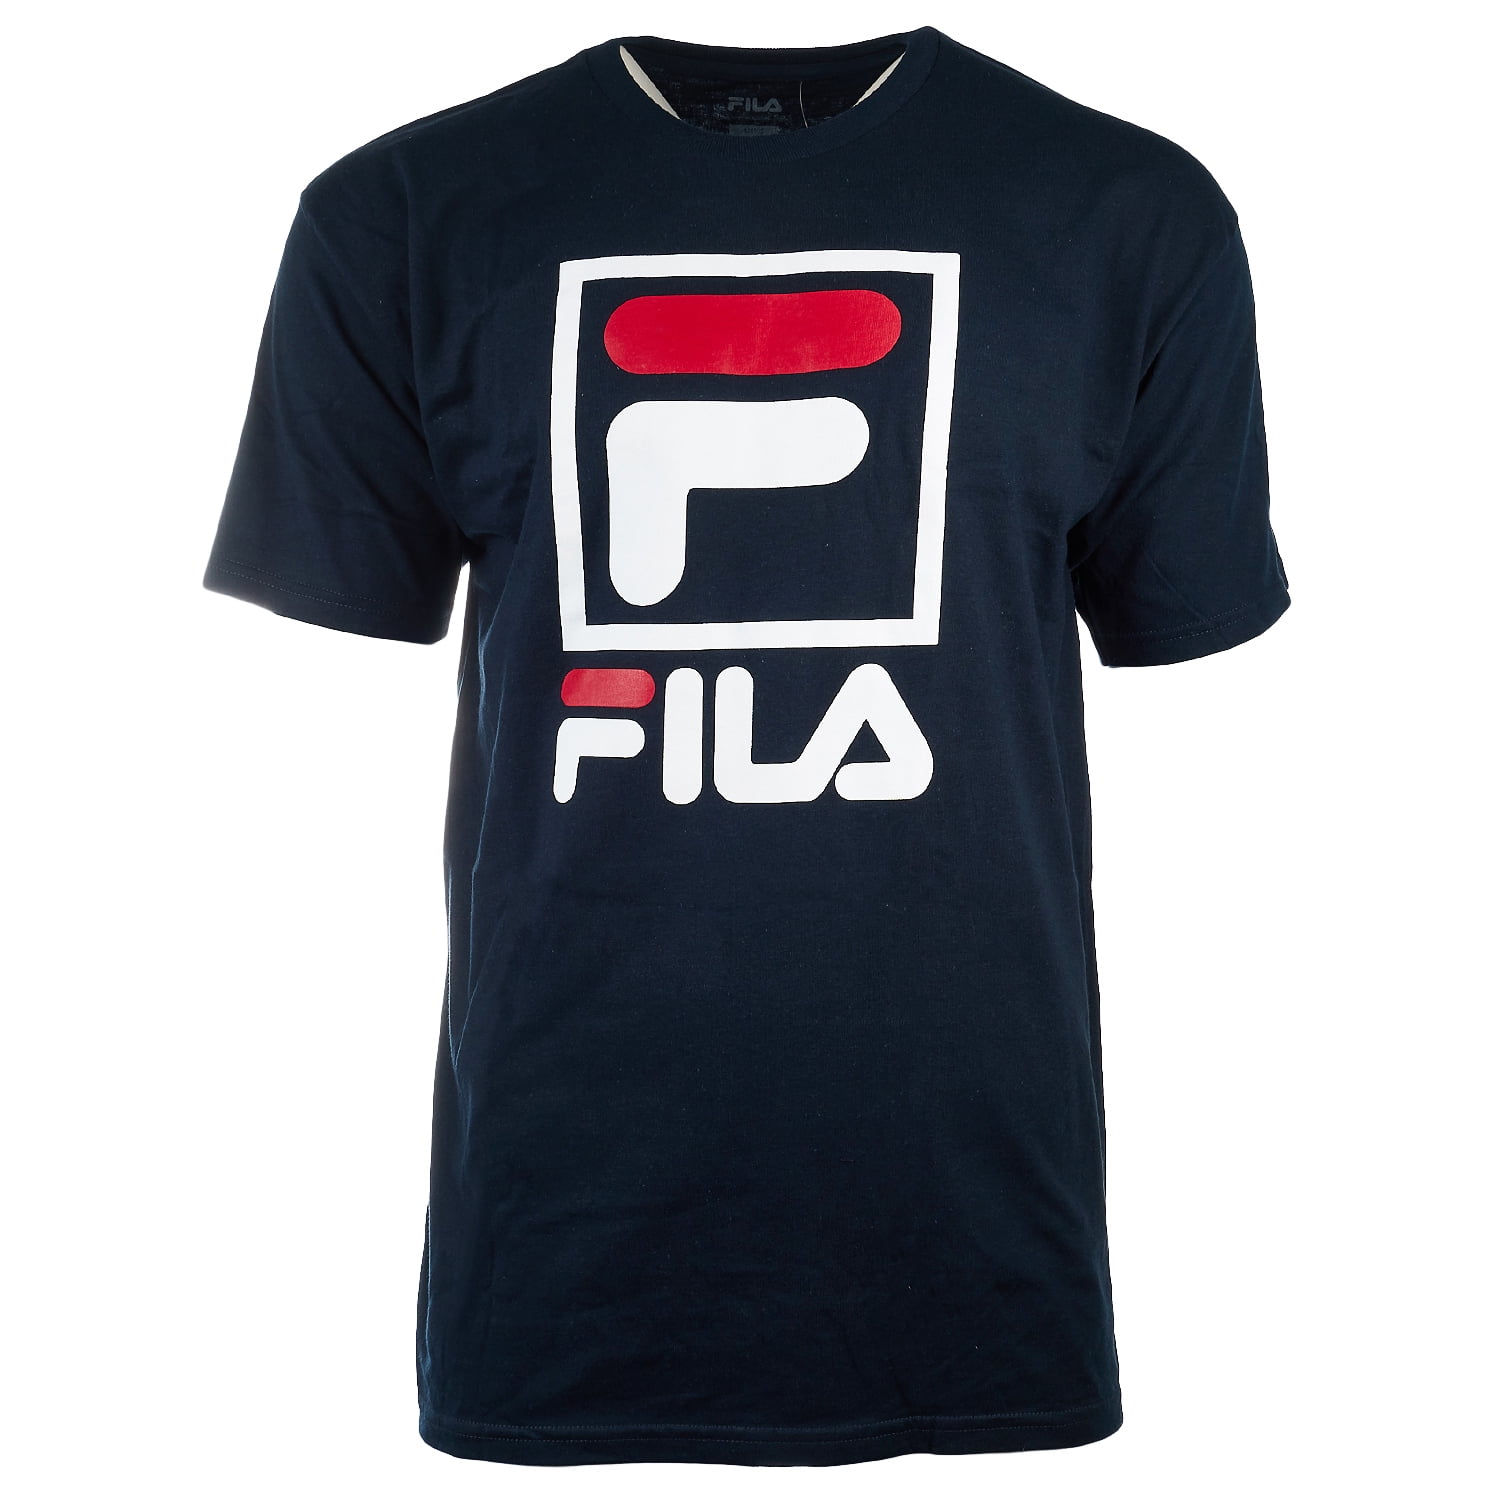 FILA - Fila Stacked T-Shirt - Navy 